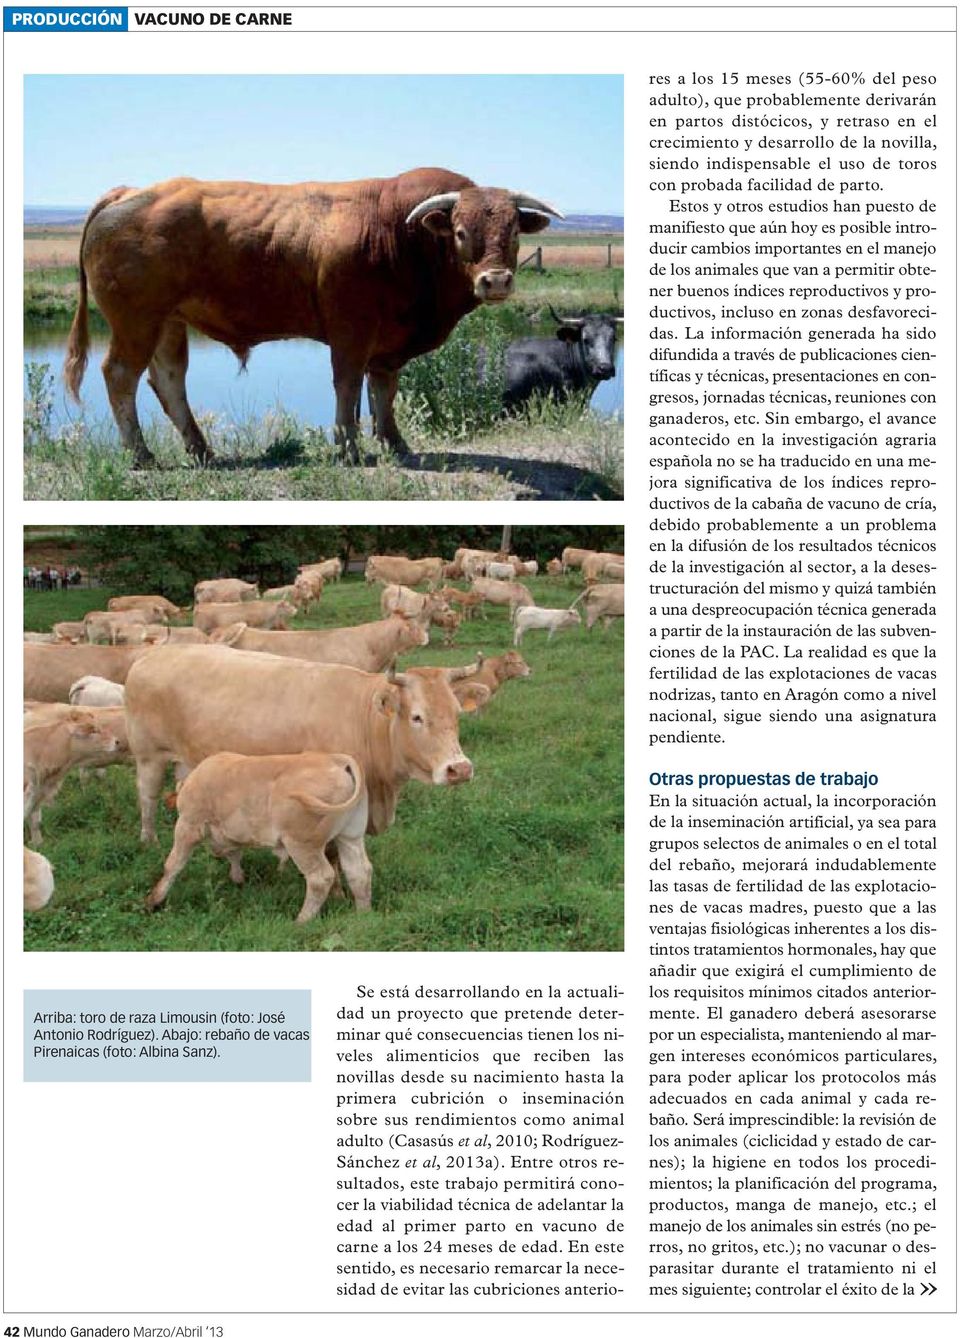 nacimiento hasta la primera cubrición o inseminación sobre sus rendimientos como animal adulto (Casasús, 2010; Rodríguez- Sánchez, 2013a).